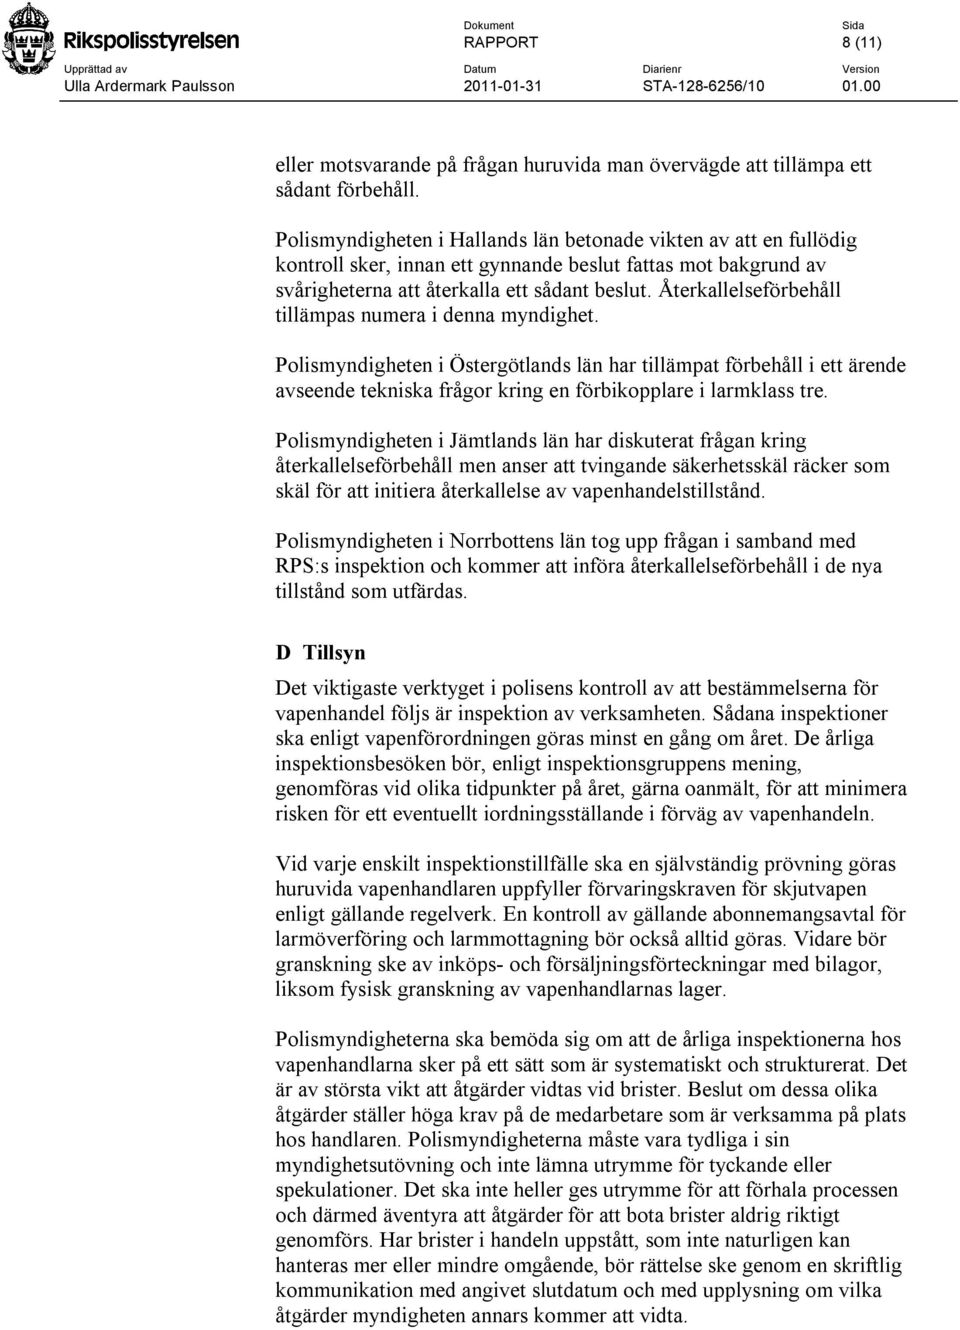 Återkallelseförbehåll tillämpas numera i denna myndighet. Polismyndigheten i Östergötlands län har tillämpat förbehåll i ett ärende avseende tekniska frågor kring en förbikopplare i larmklass tre.